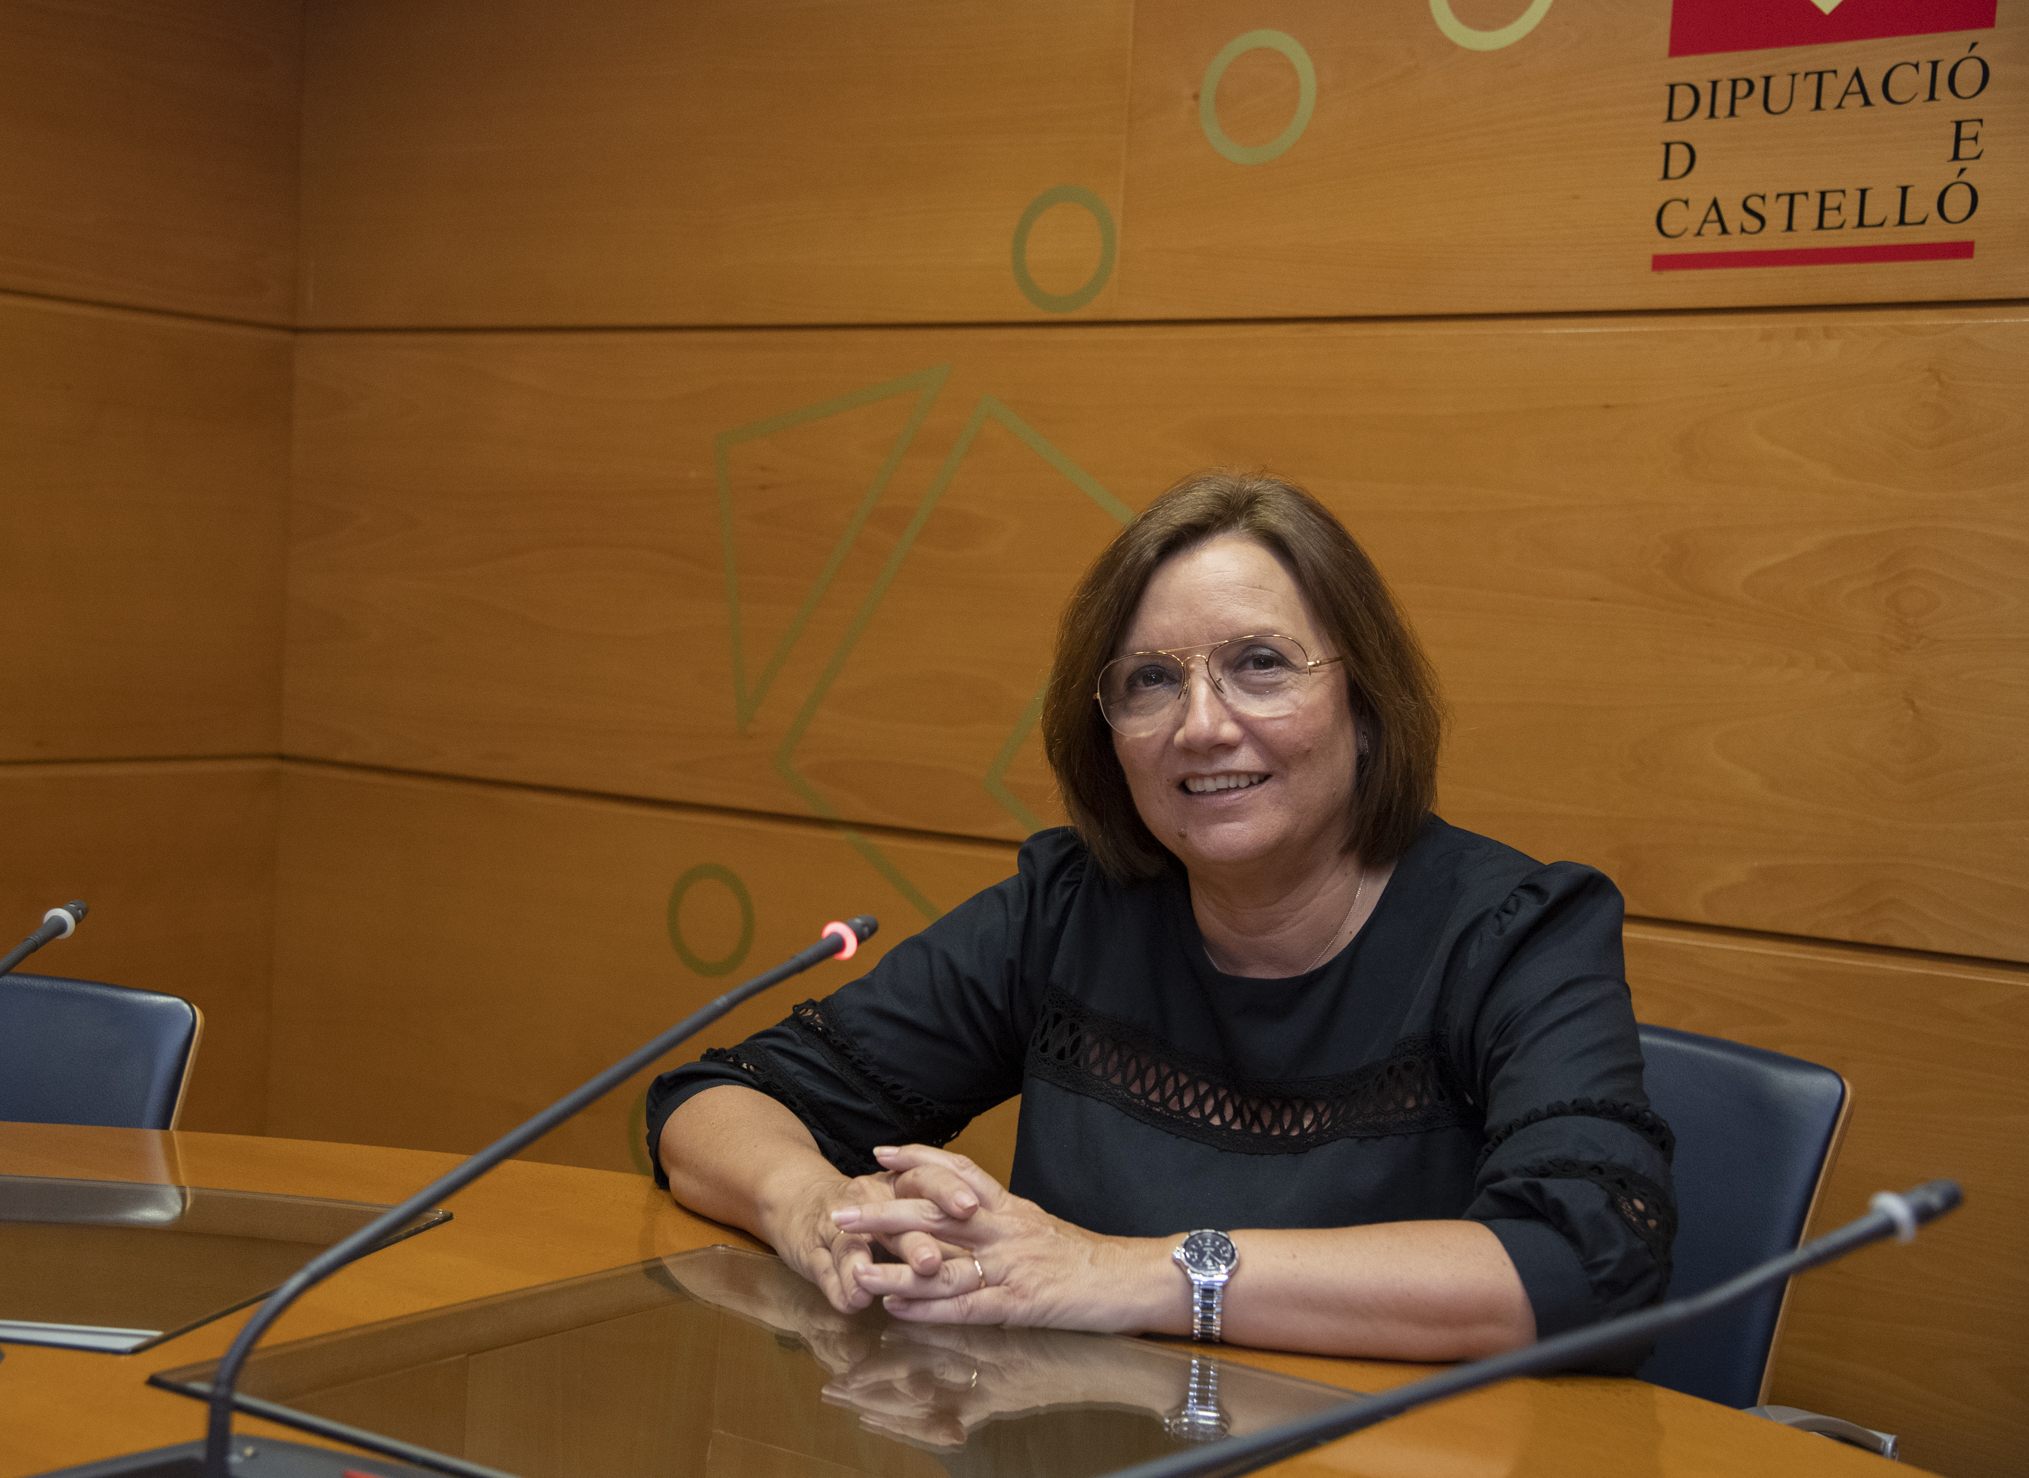 Las diputaciones de Castellón y Guipúzcoa promueven una alianza para fomentar la transparencia en la administración local